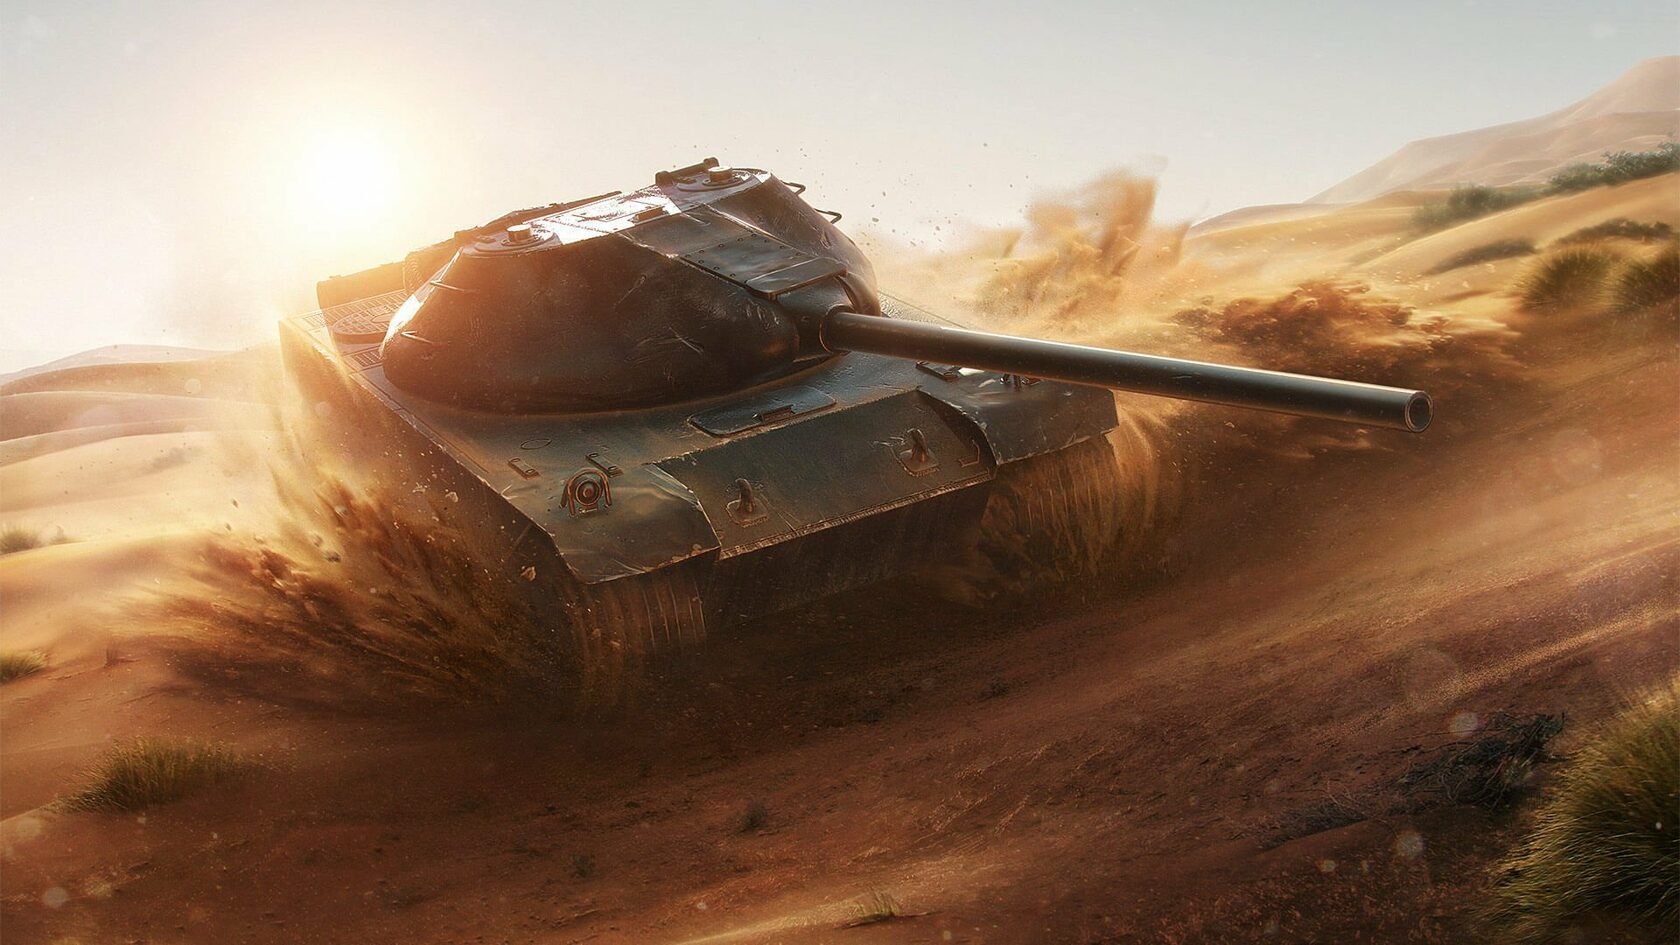 Йох мир танков. К91 блиц. К91 World of Tanks Blitz. К-91 танк World of Tanks. К-91 WOT Blitz.